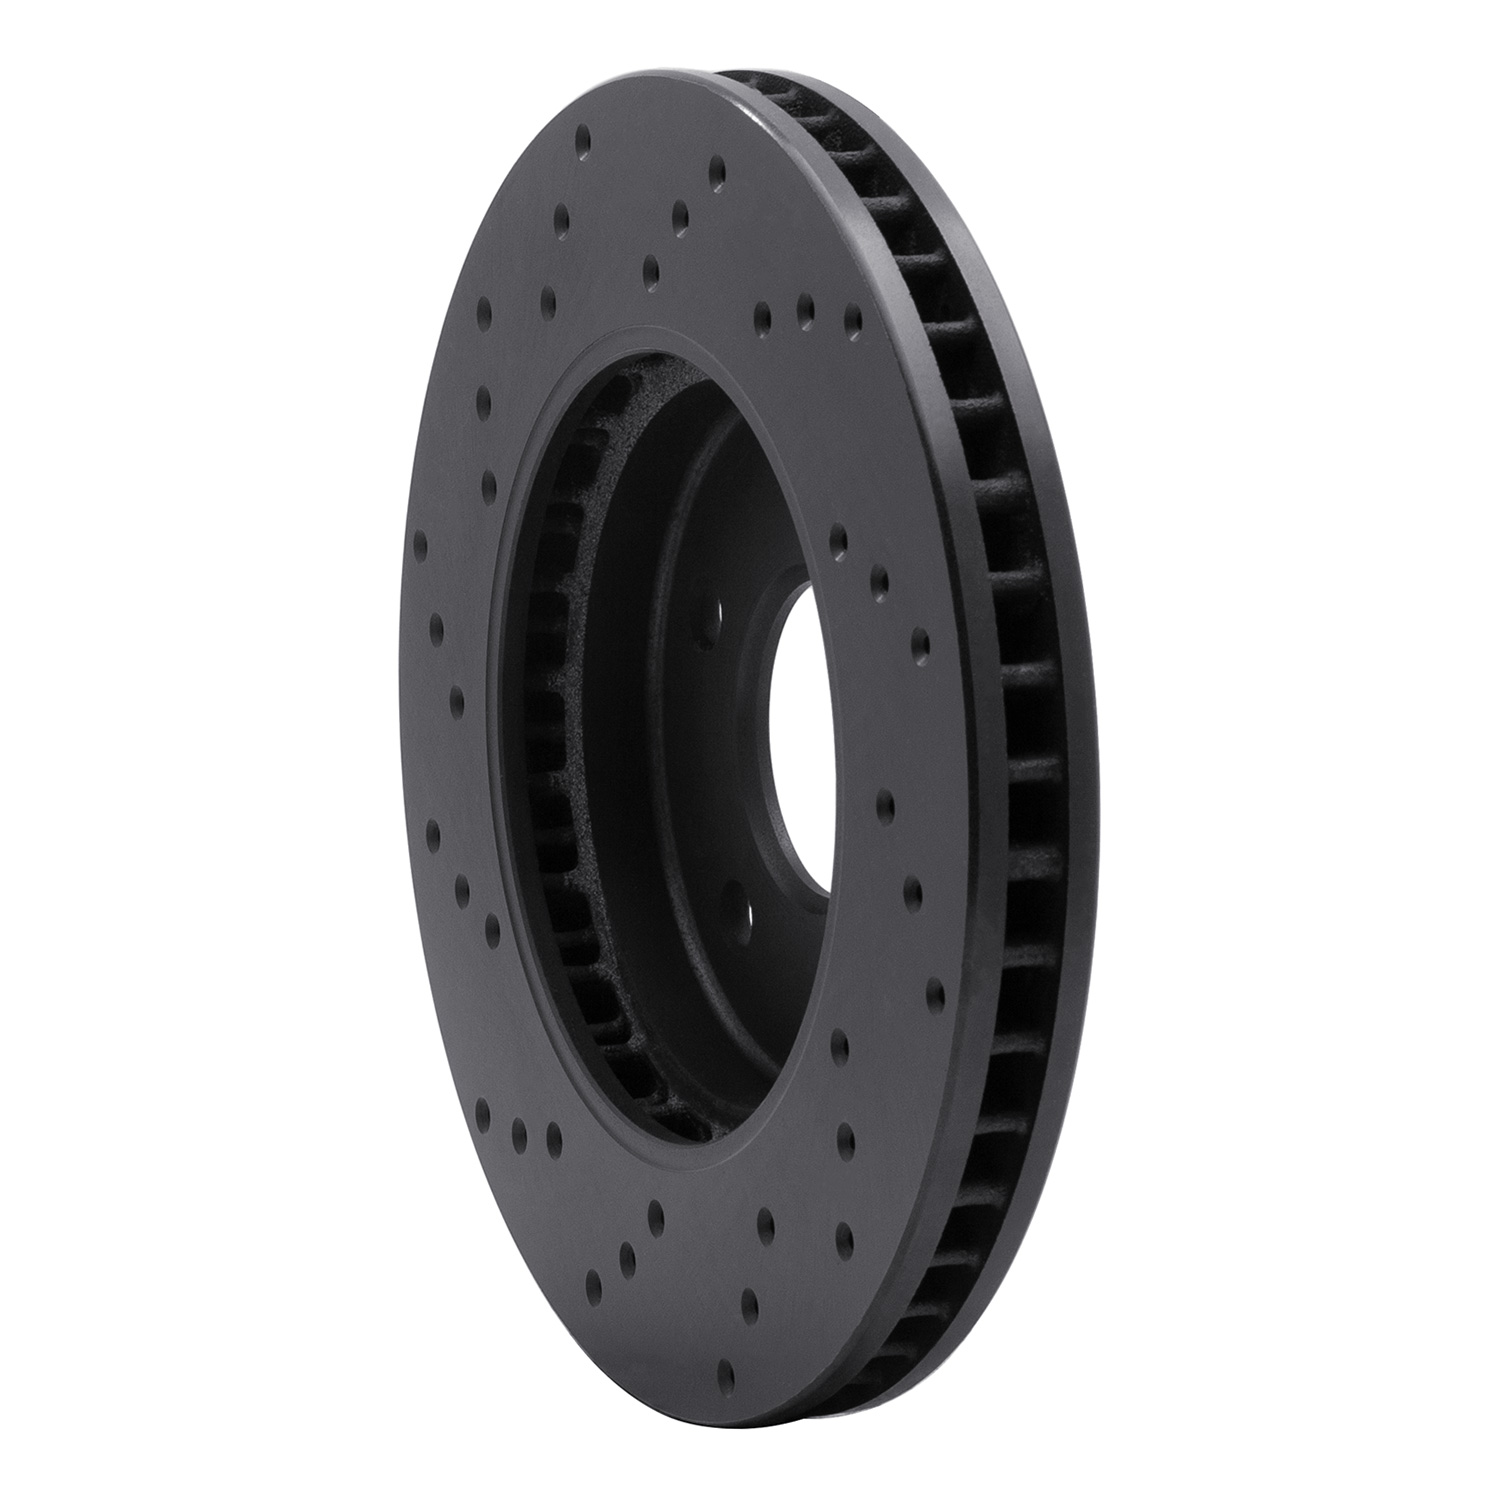 Drilled Brake Rotor [Black], Fits Select Multiple Makes/Models